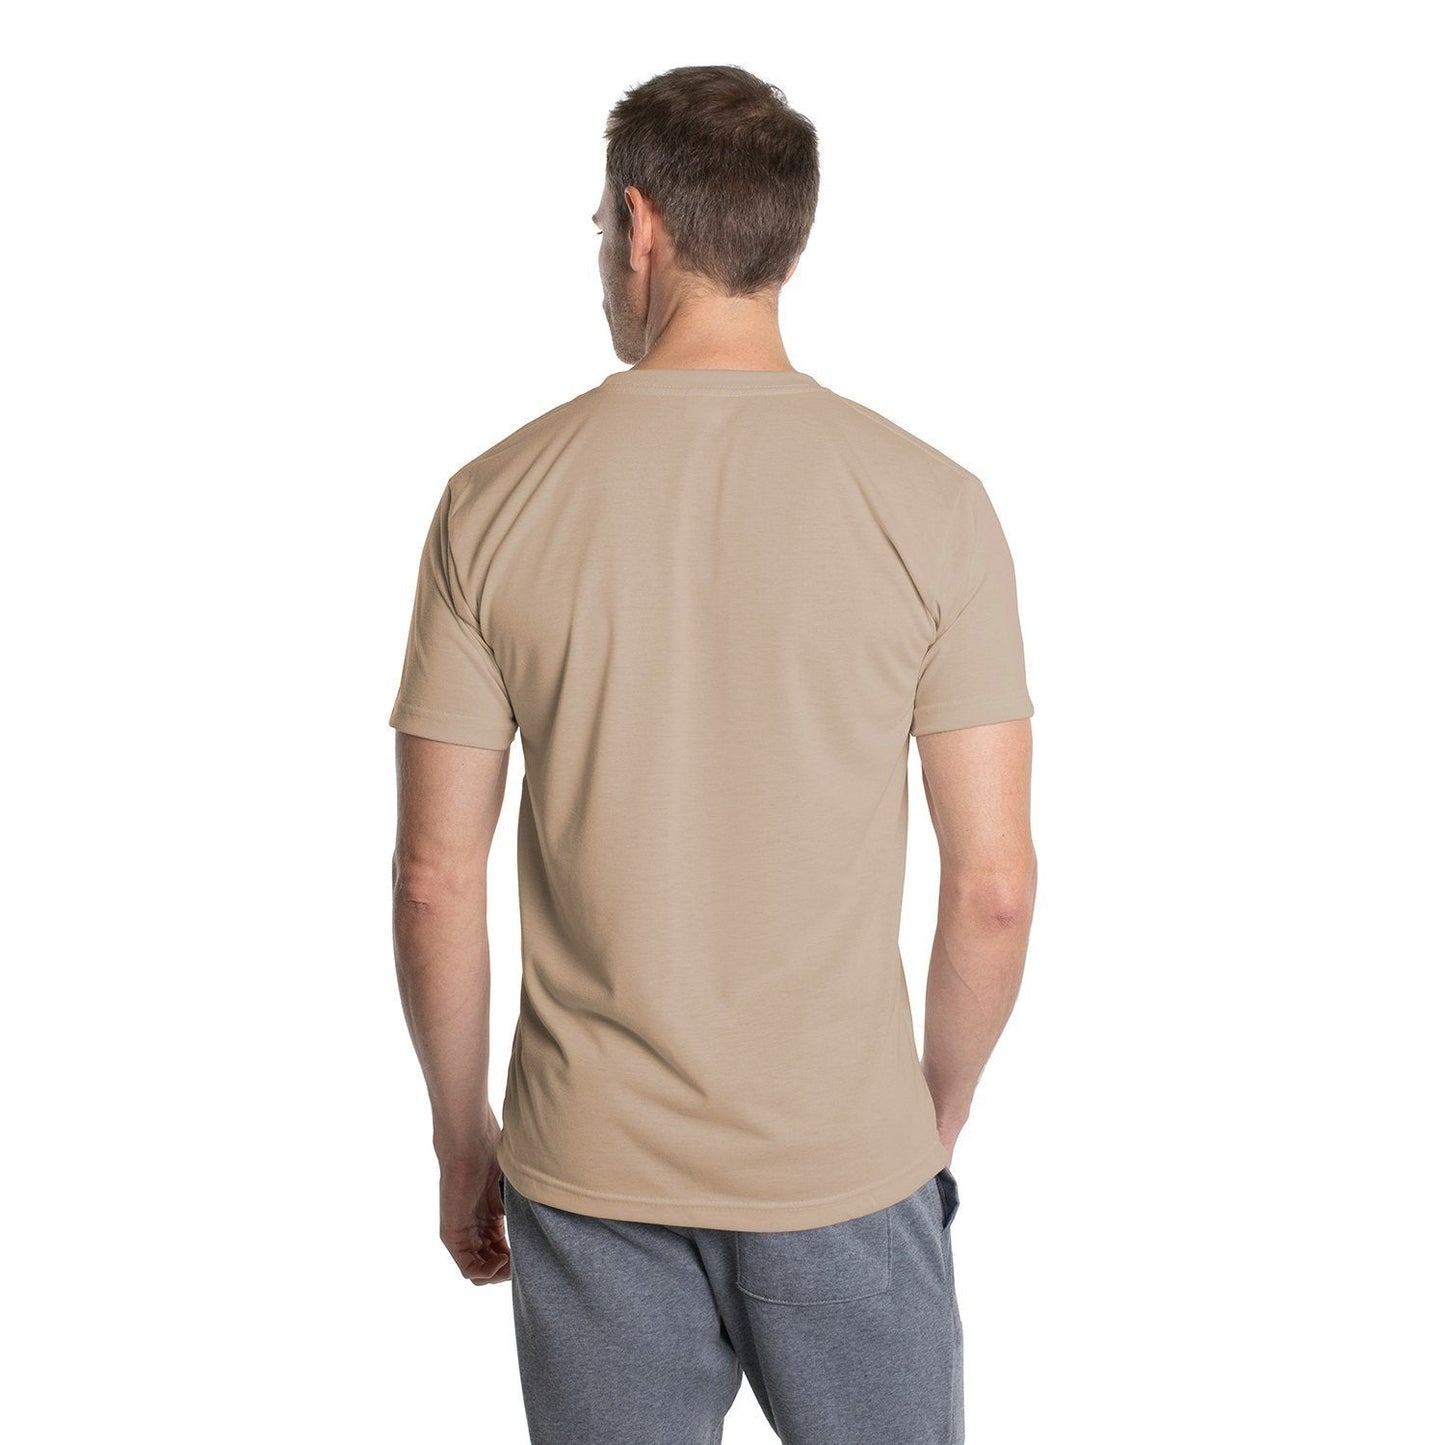 Men's SpunSoft Tech Short Sleeve Shirt